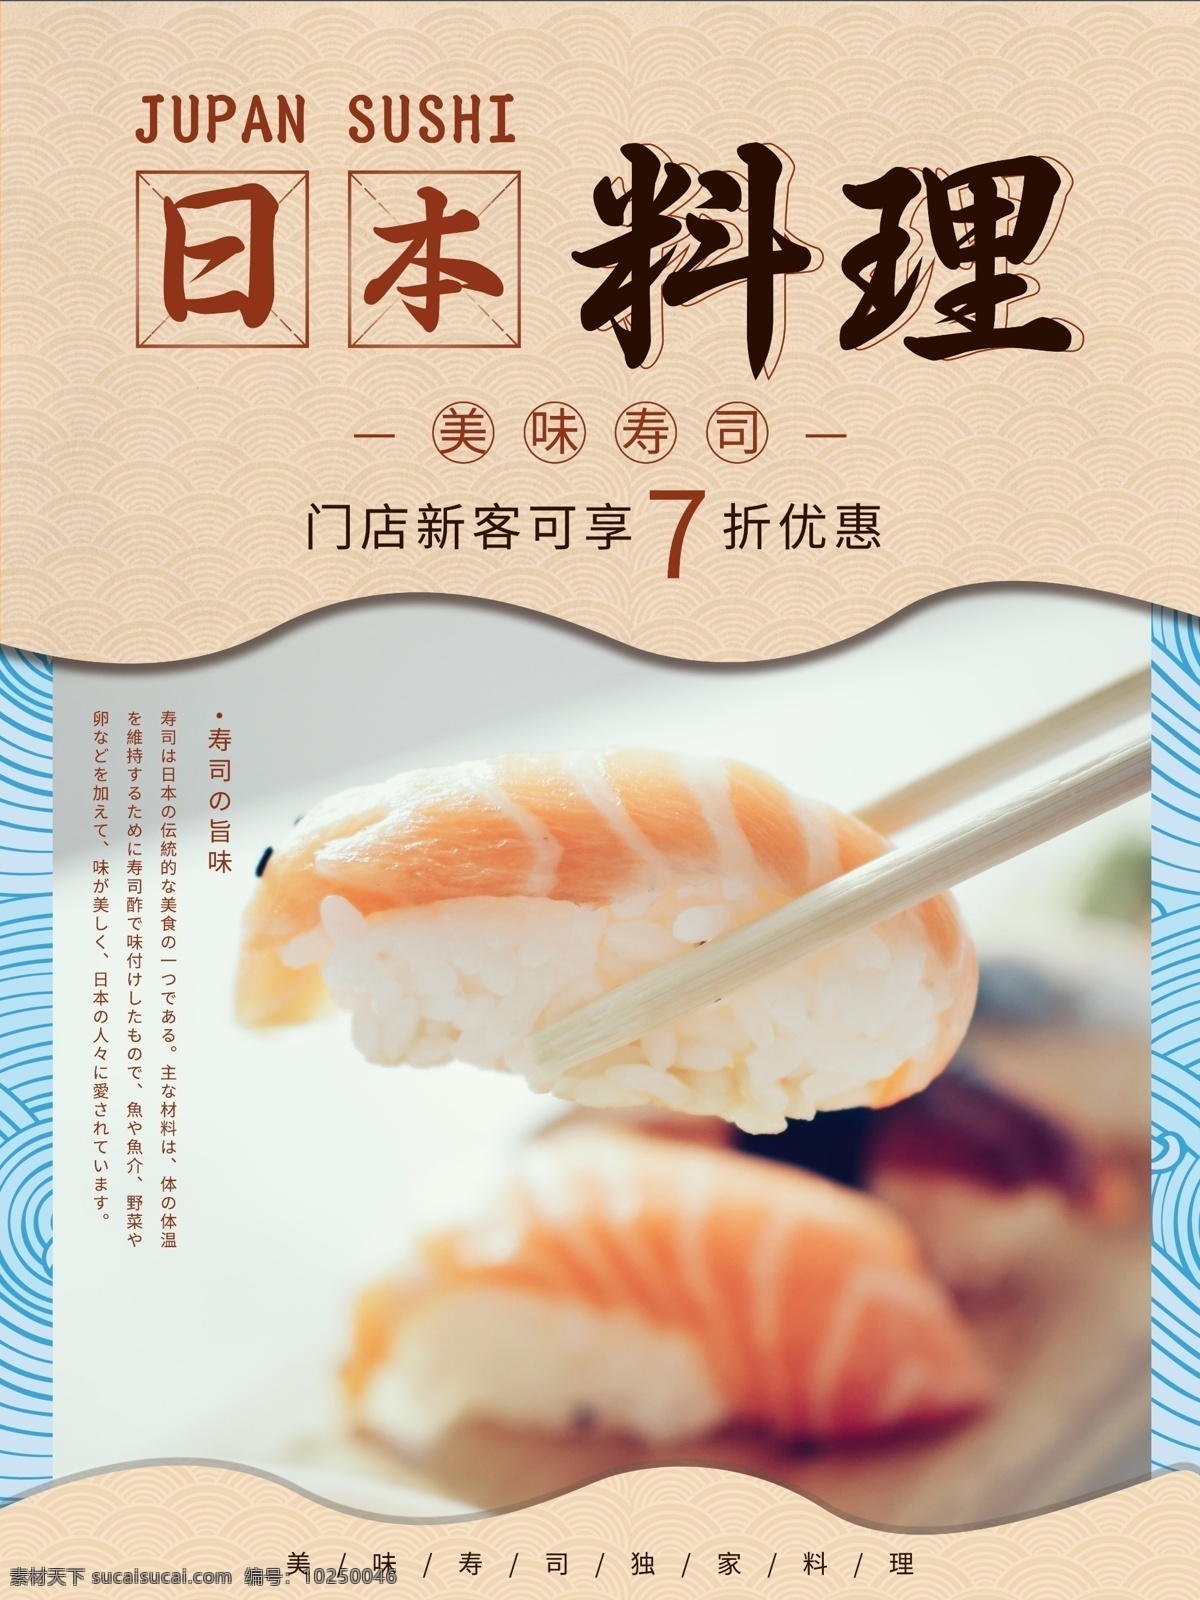 简约 日本料理 寿司 美食 宣传 促销 海报 美食海报 促销海报 宣传海报 小清新